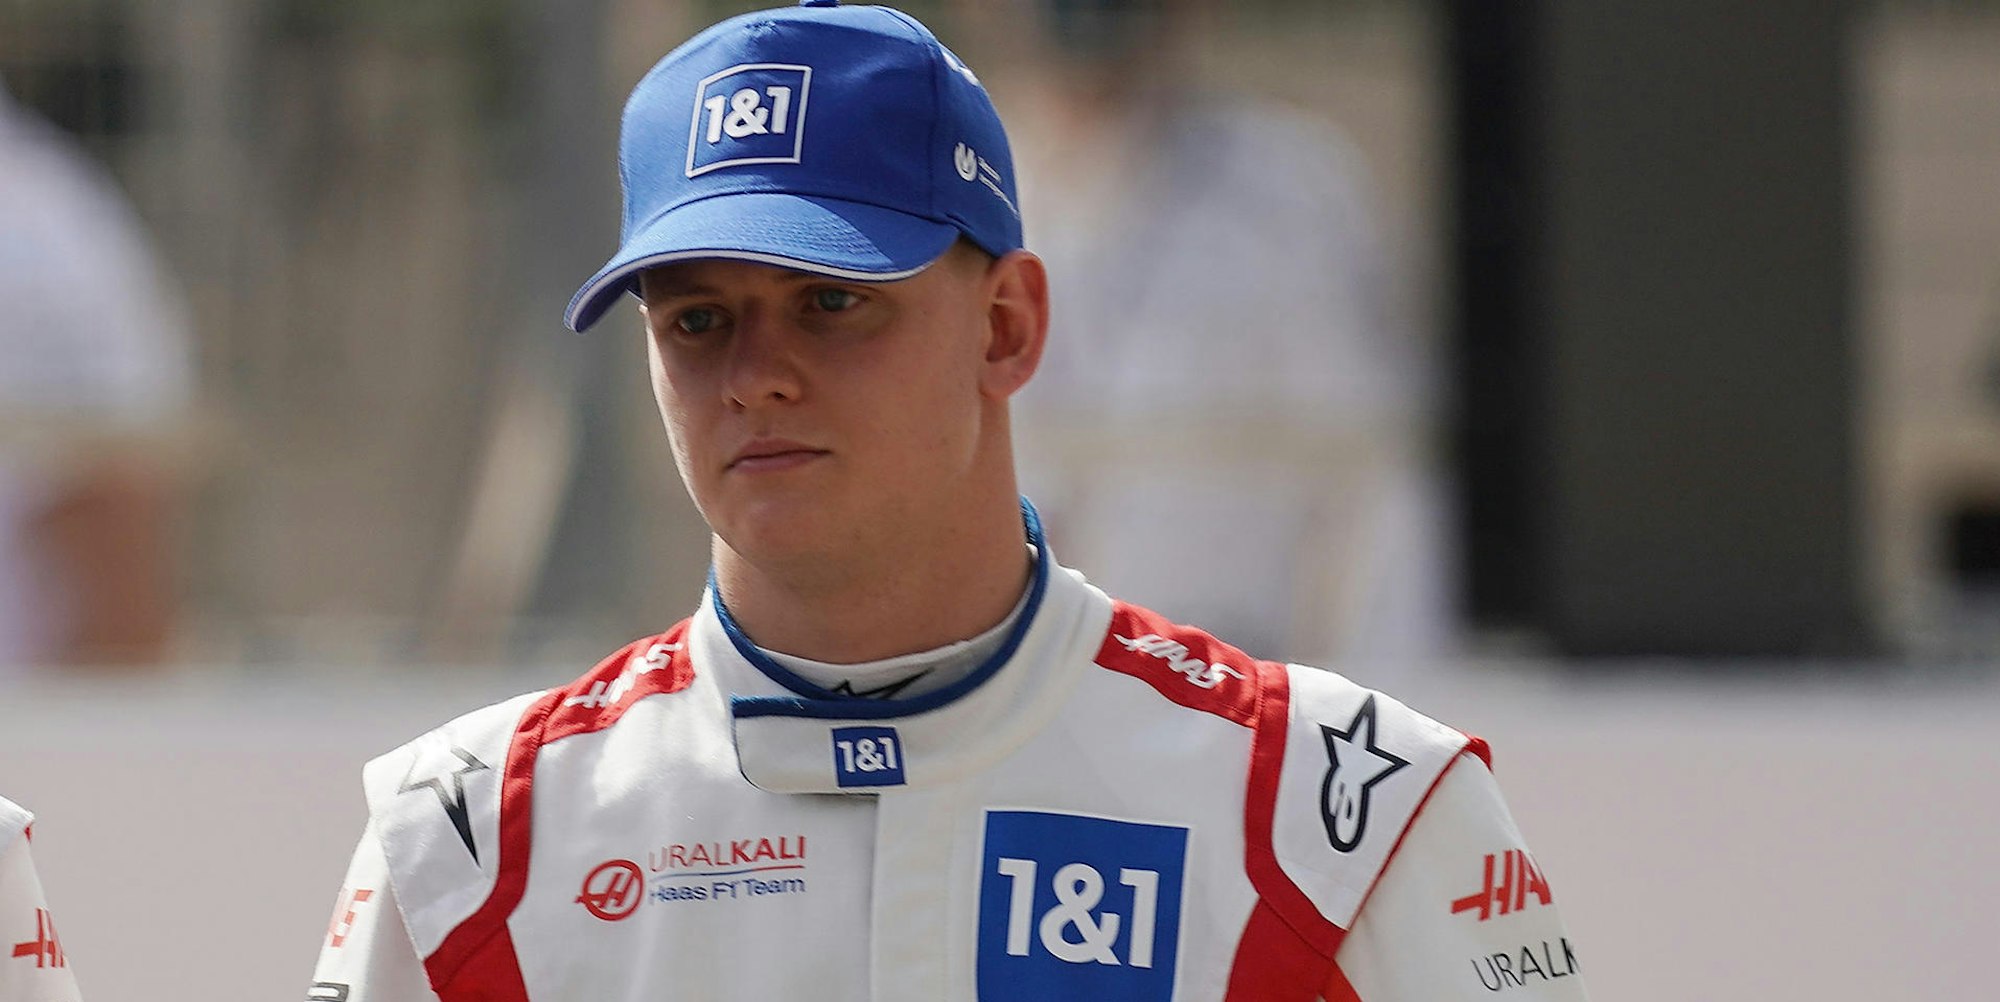 Mick Schumacher bei Testrunden in Bahrain